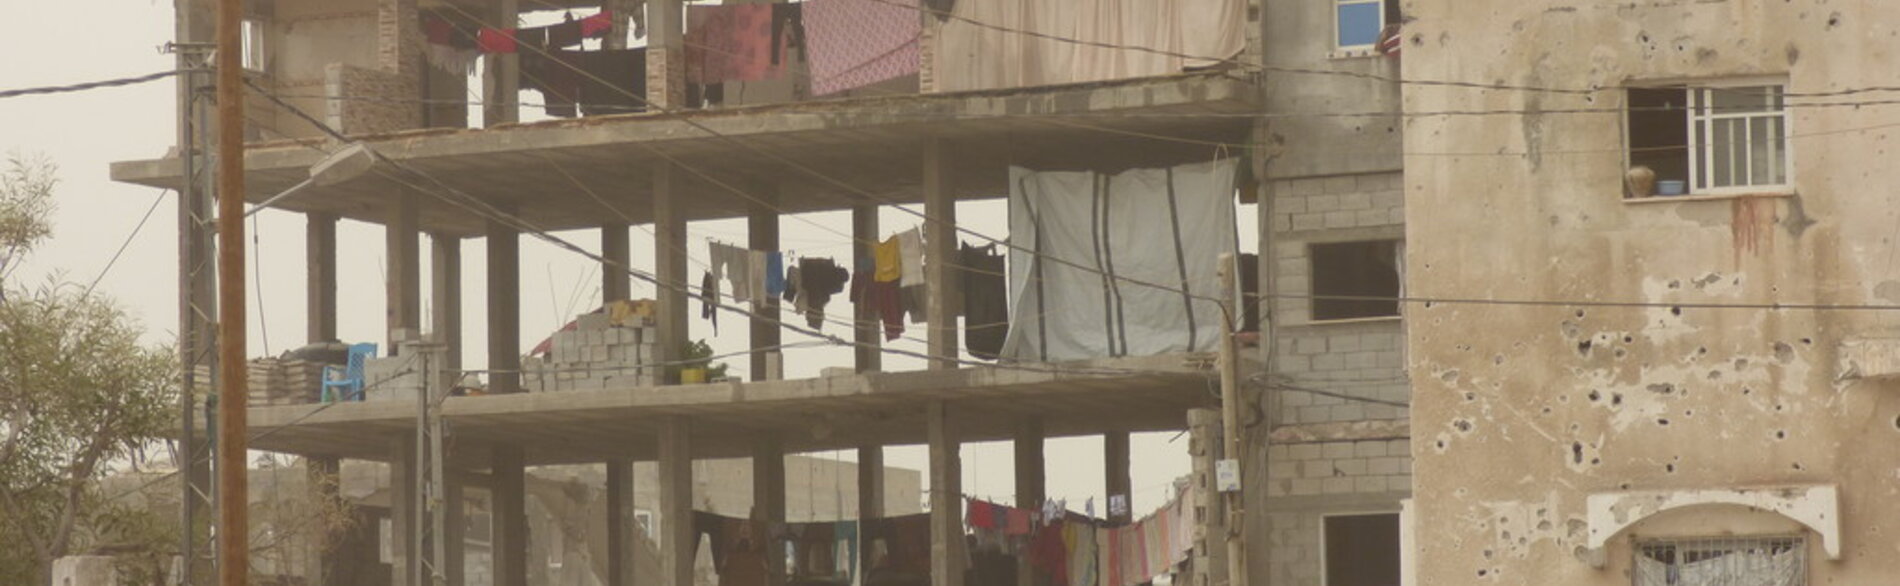 מבנה בשיקום שבו מתגוררים עקורים פנימיים, בית חנון / צילום: משרד האו״ם לתיאום עניינים הומניטריים, אוקטובר 2015.